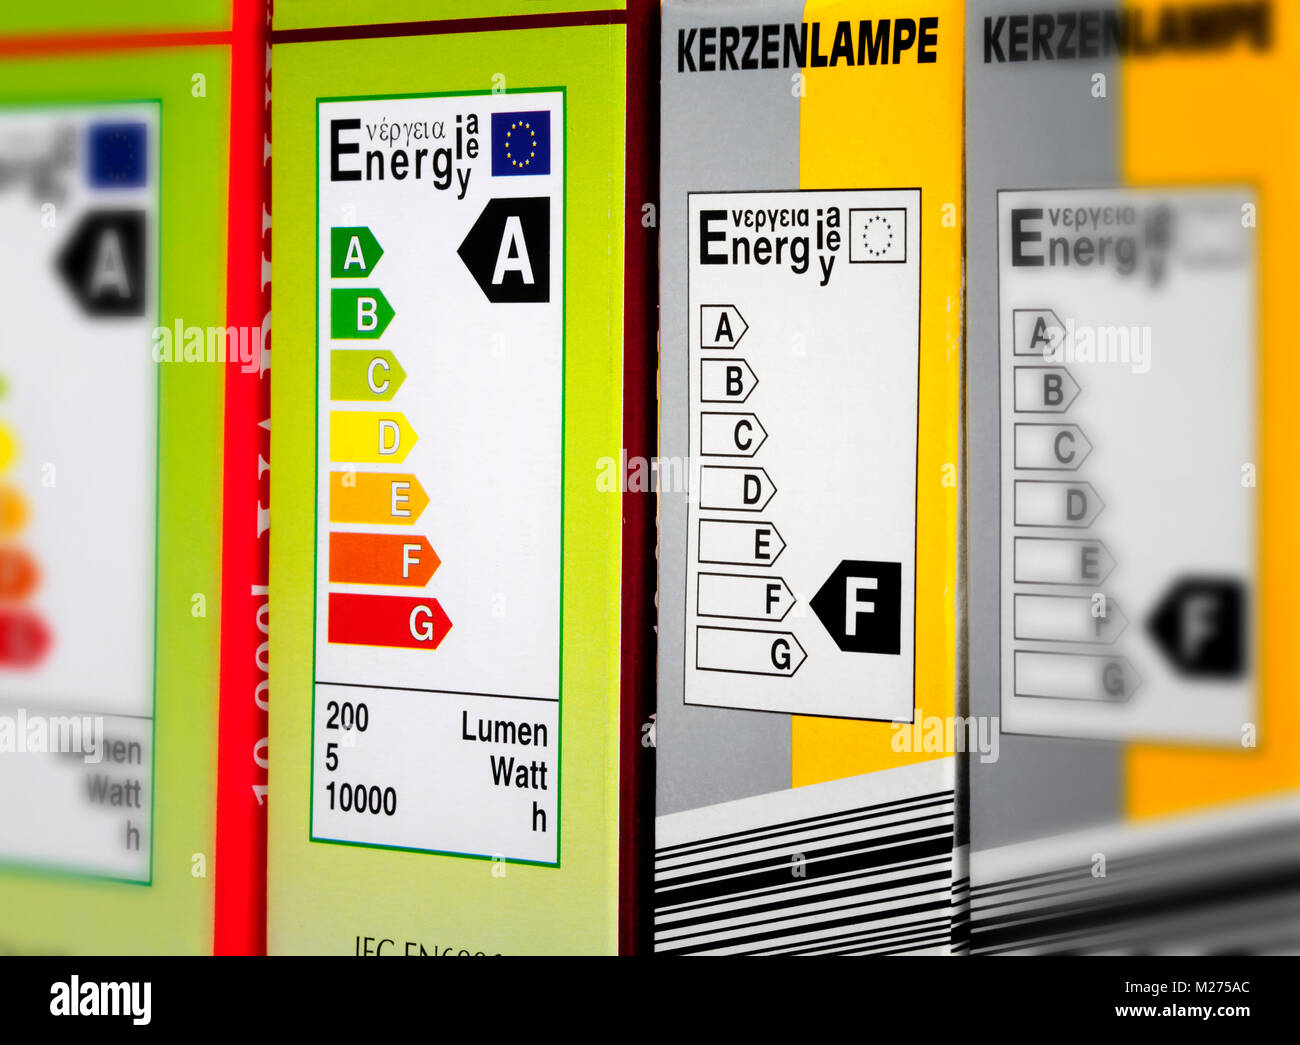 Energieeffiziente Produkte Etiketten Stockfoto